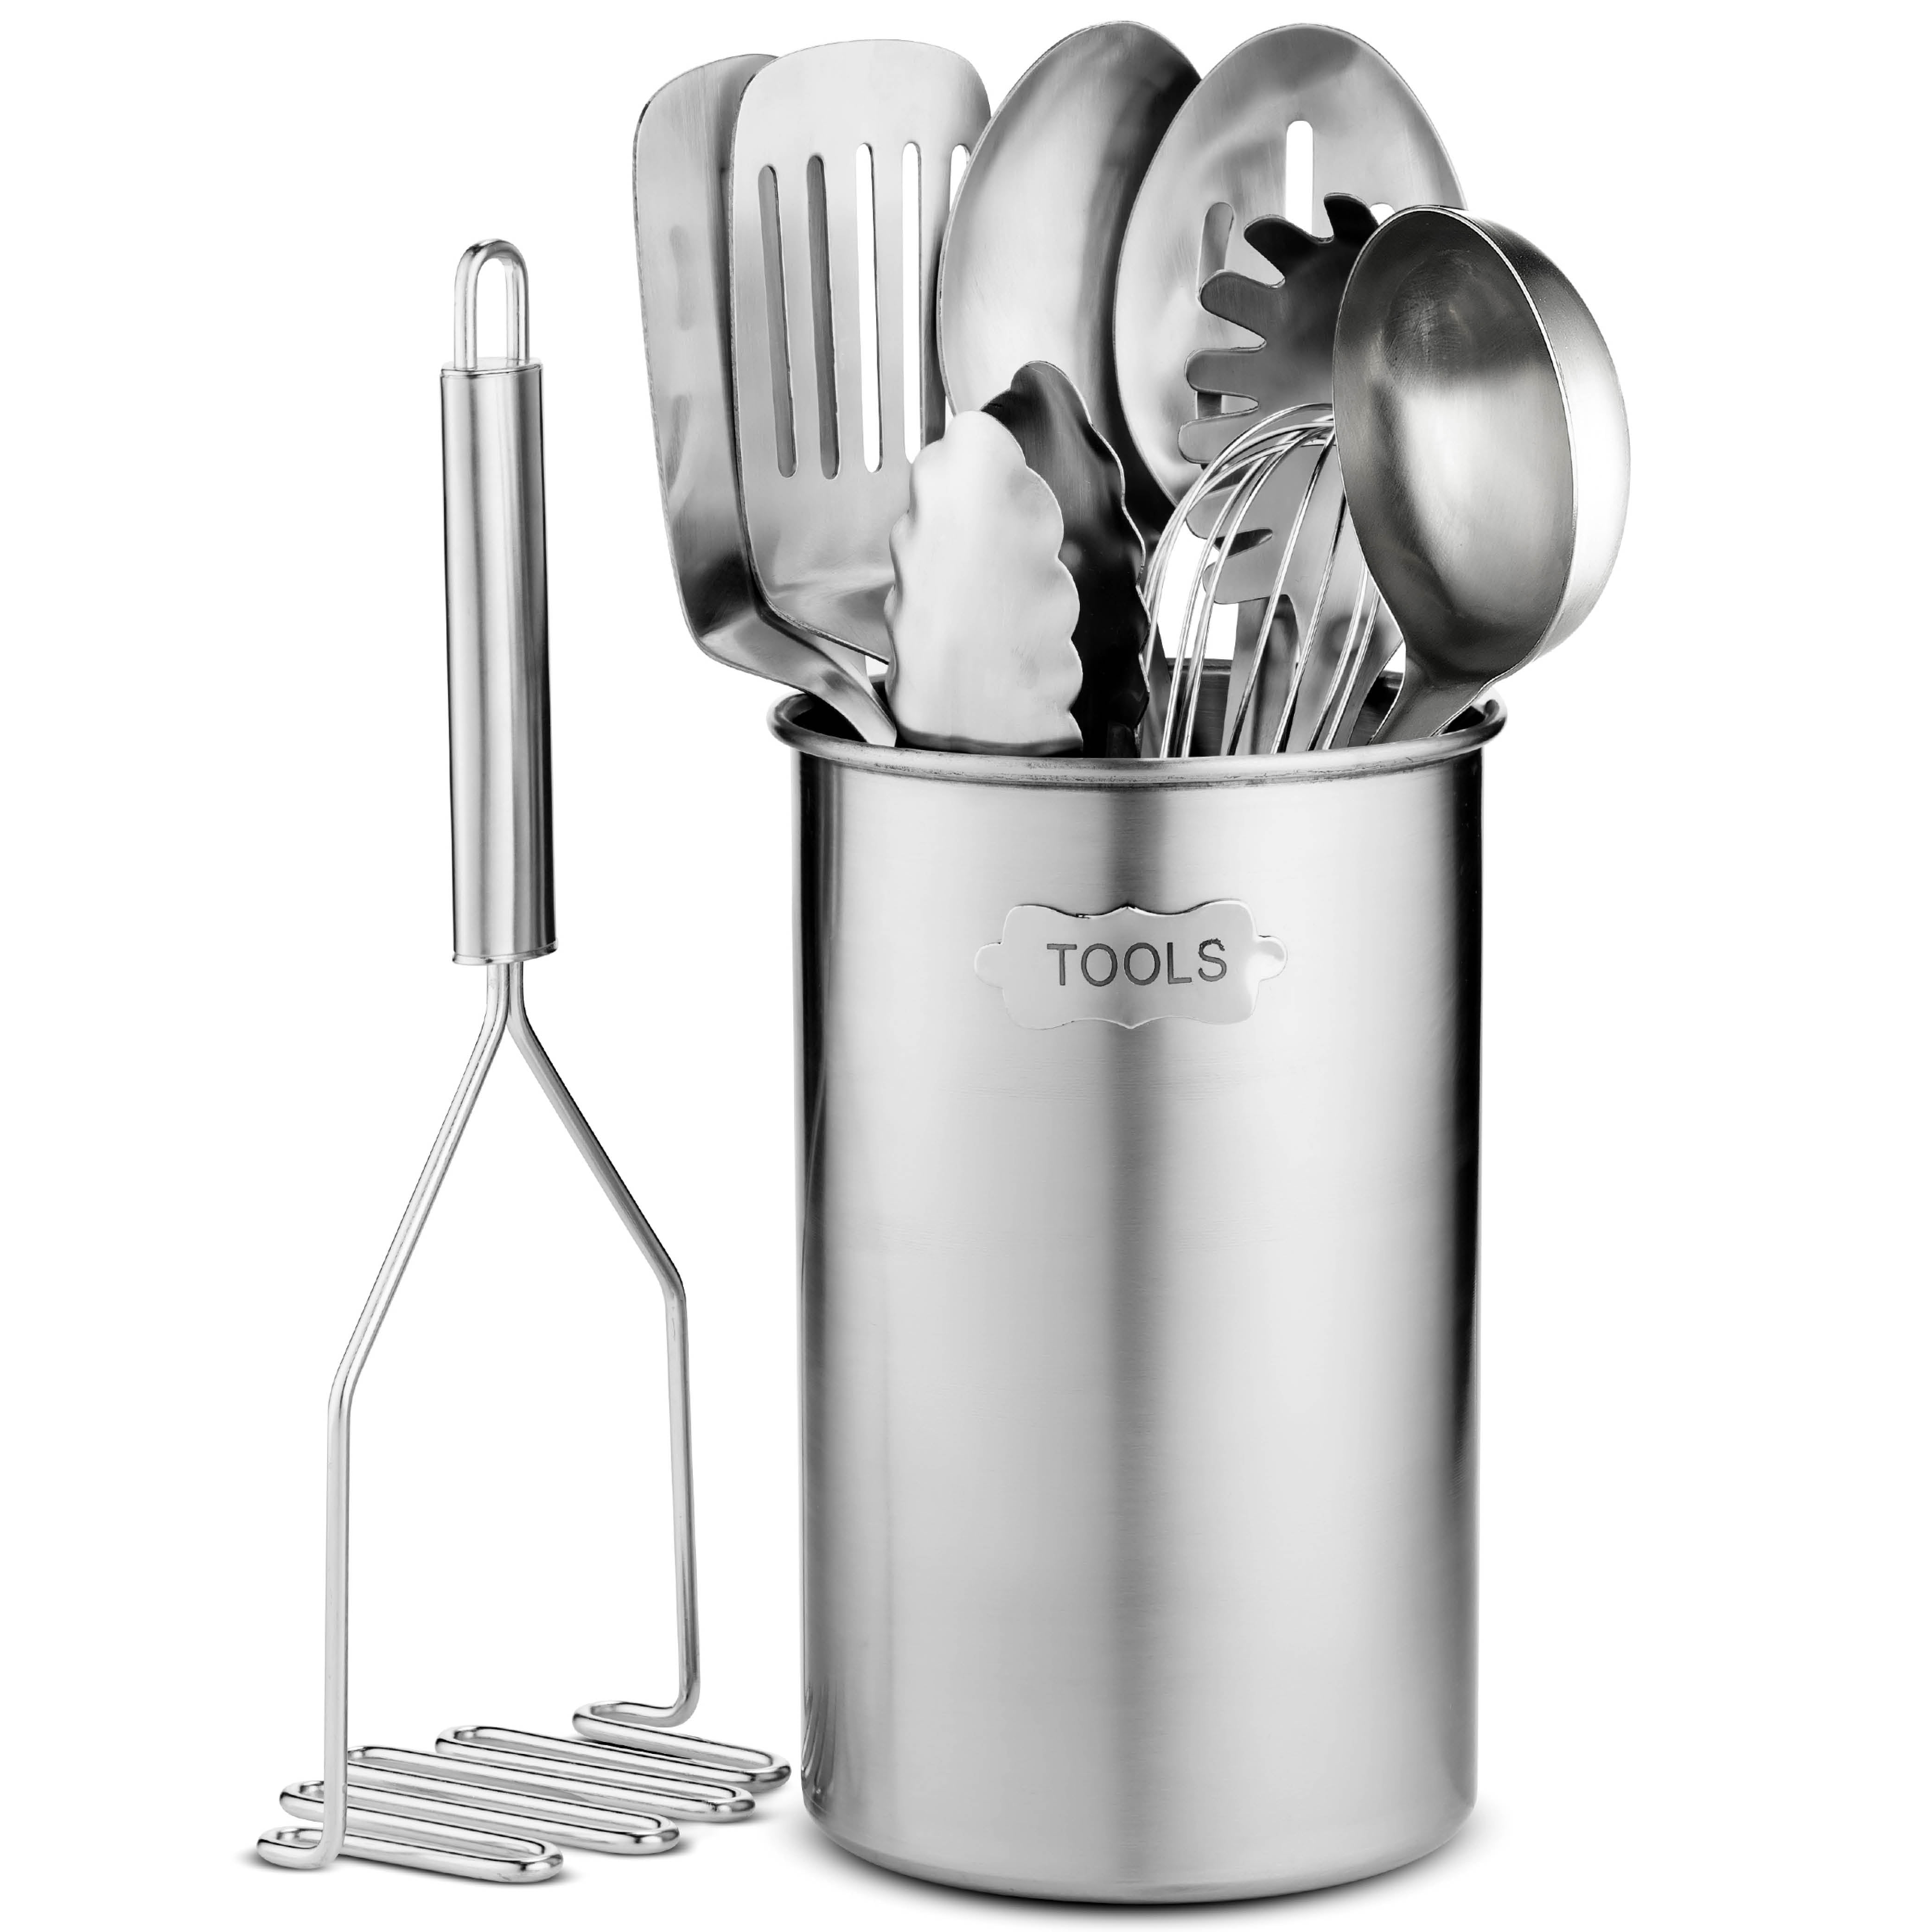 Stainless-Steel Kitchen Utensil Set - 10-piece premium Nonstick & Heat  Resistant Kitchen Gadgets, Tu…See more Stainless-Steel Kitchen Utensil Set  